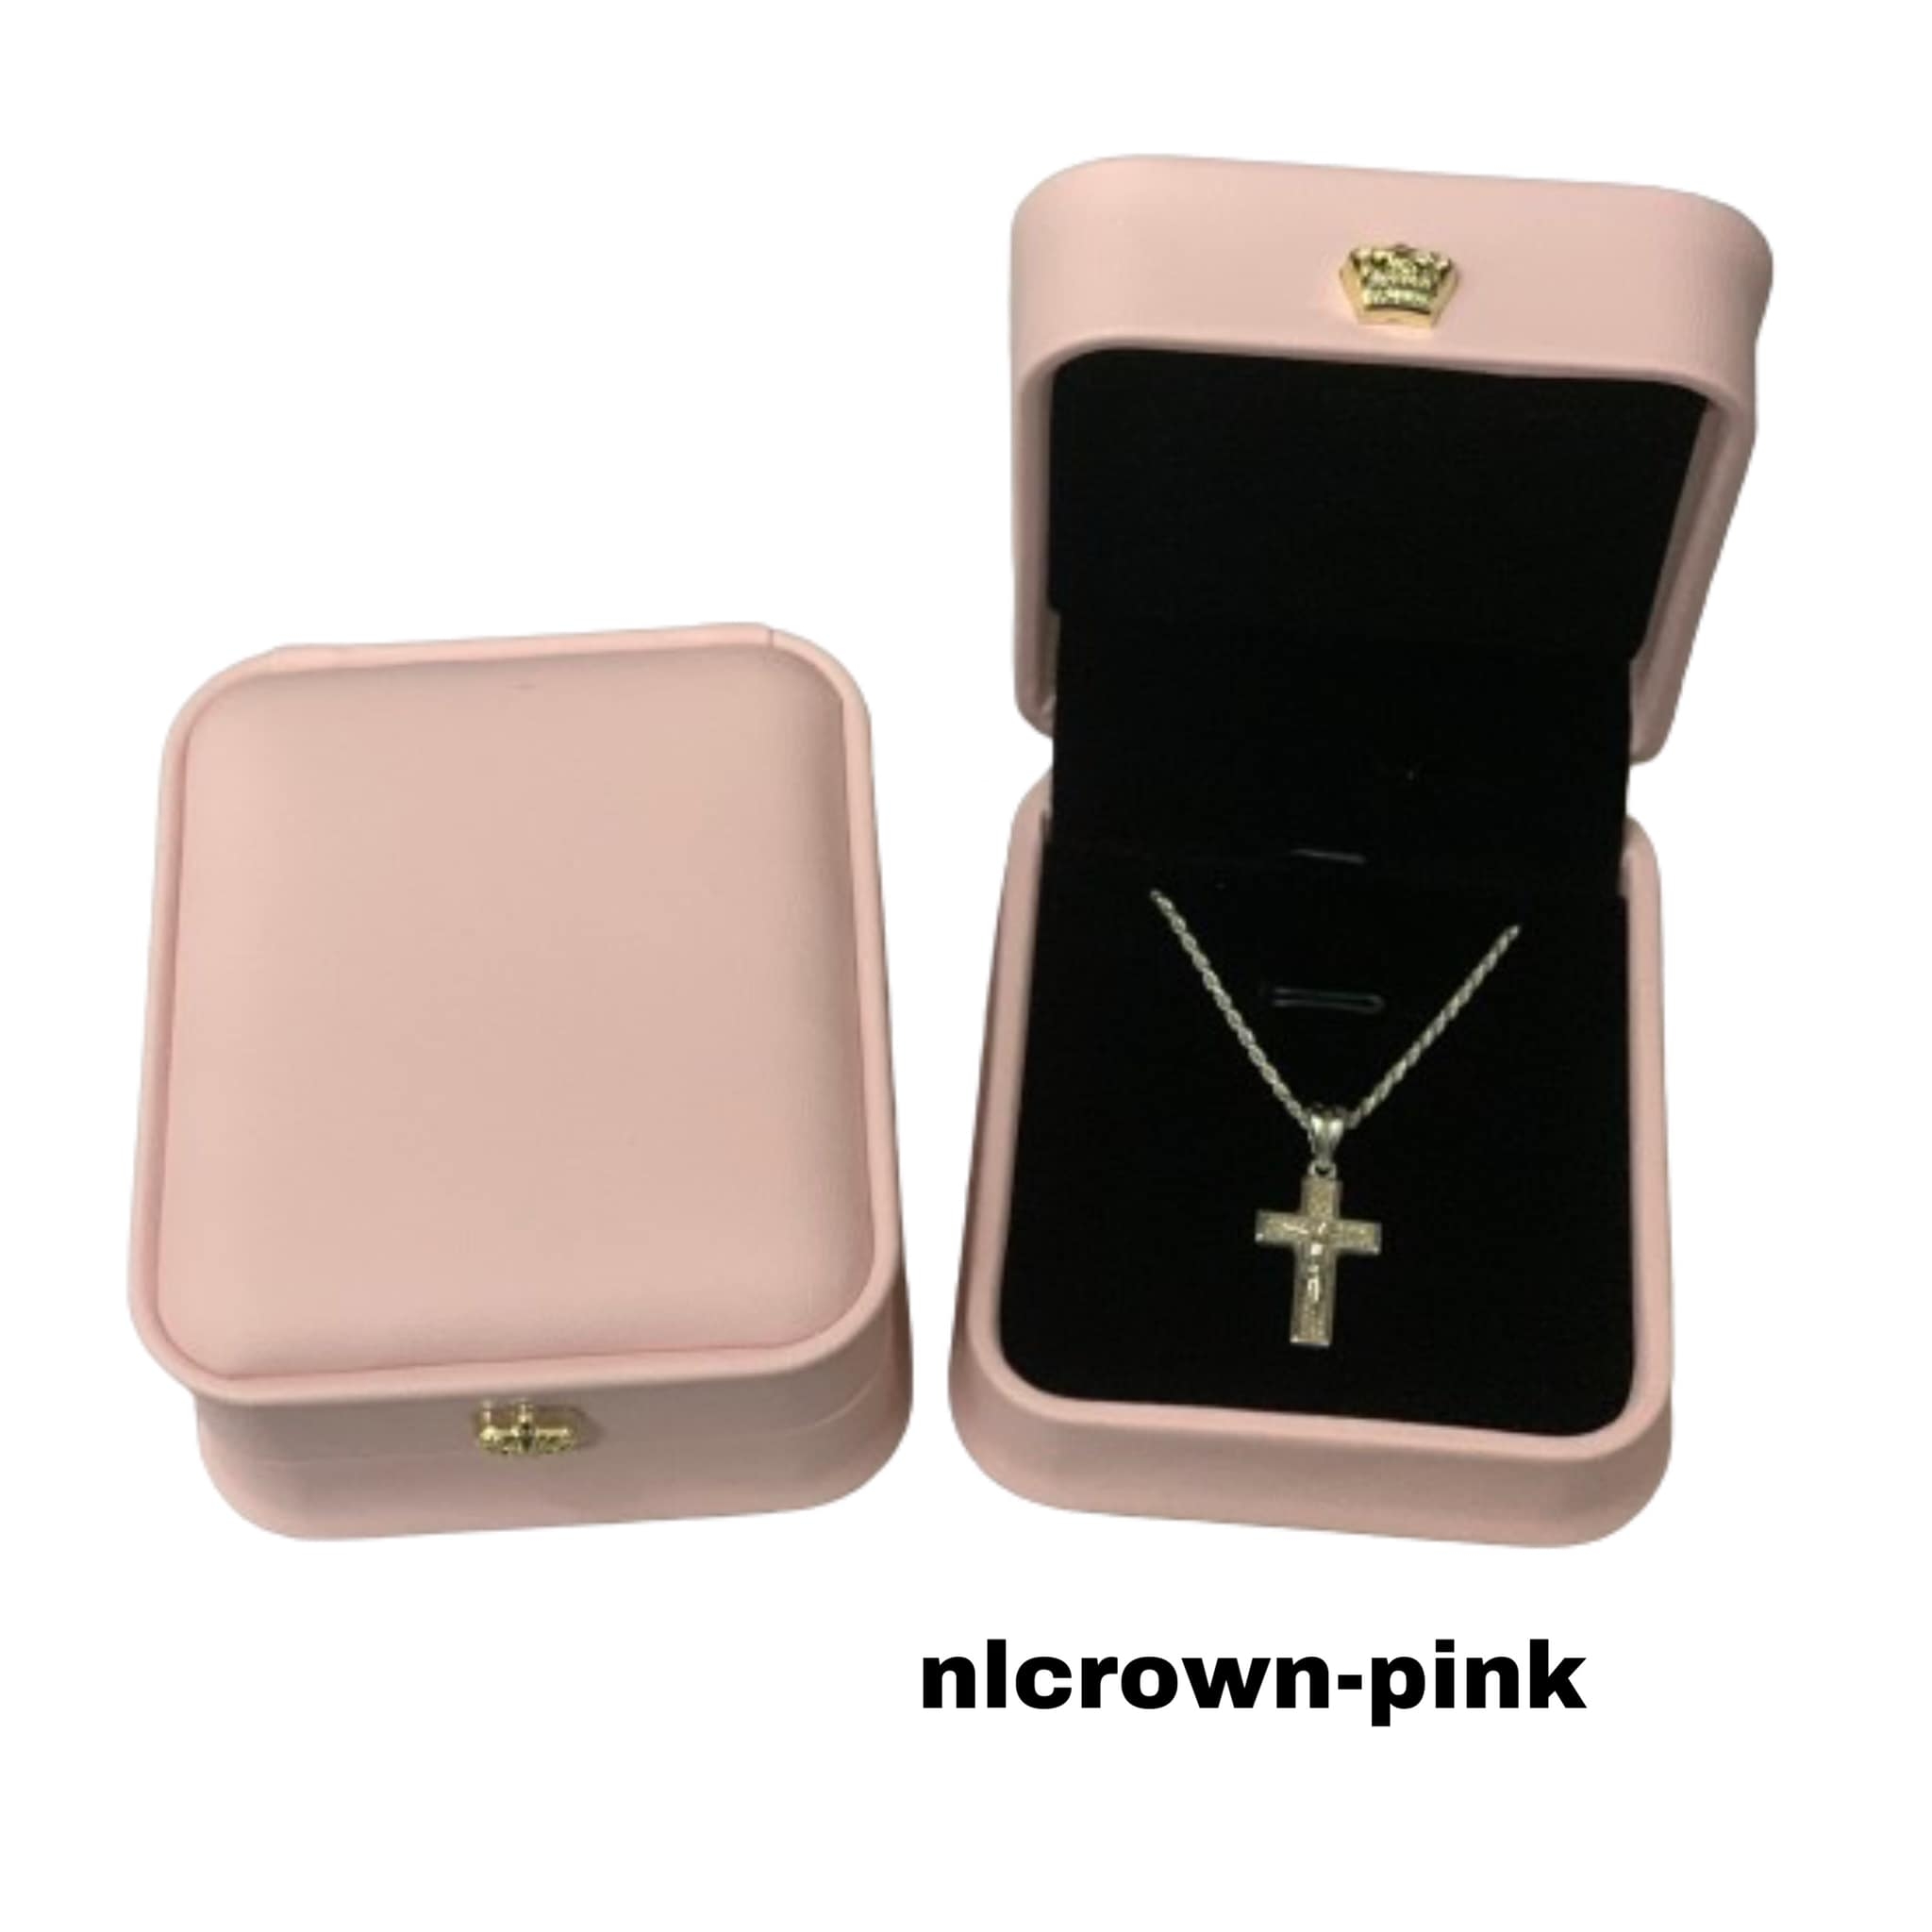 nlcrown-pink